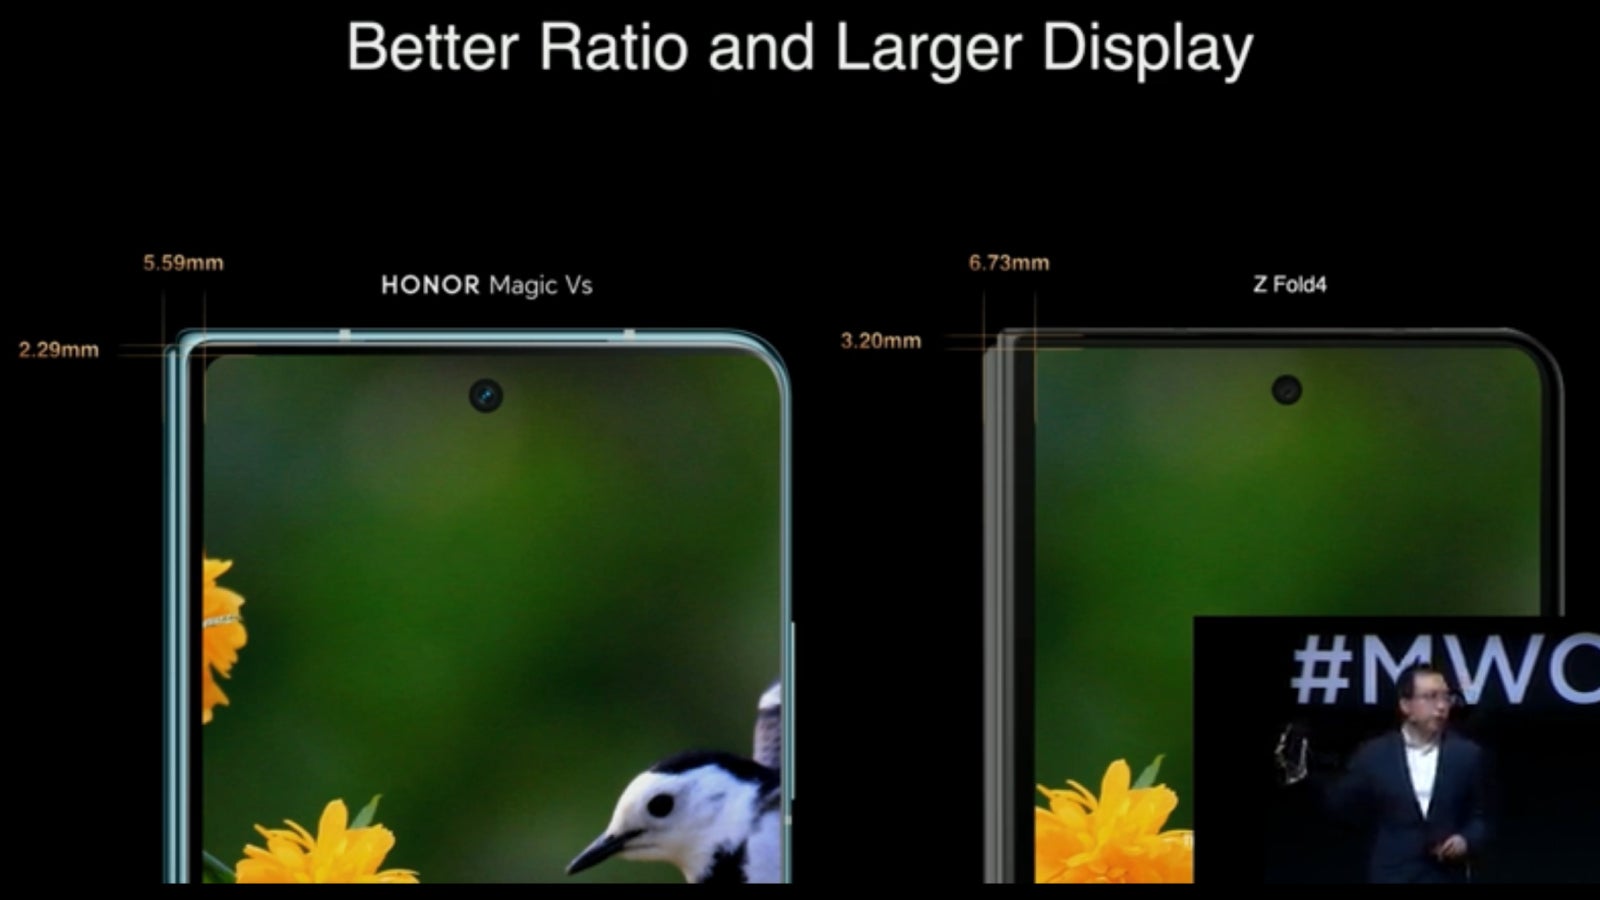 Honor Magic Vs vs Galaxy Z Fold 4 - Honor Magic Vs might be the Galaxy Z Fold 4 killer in Europe